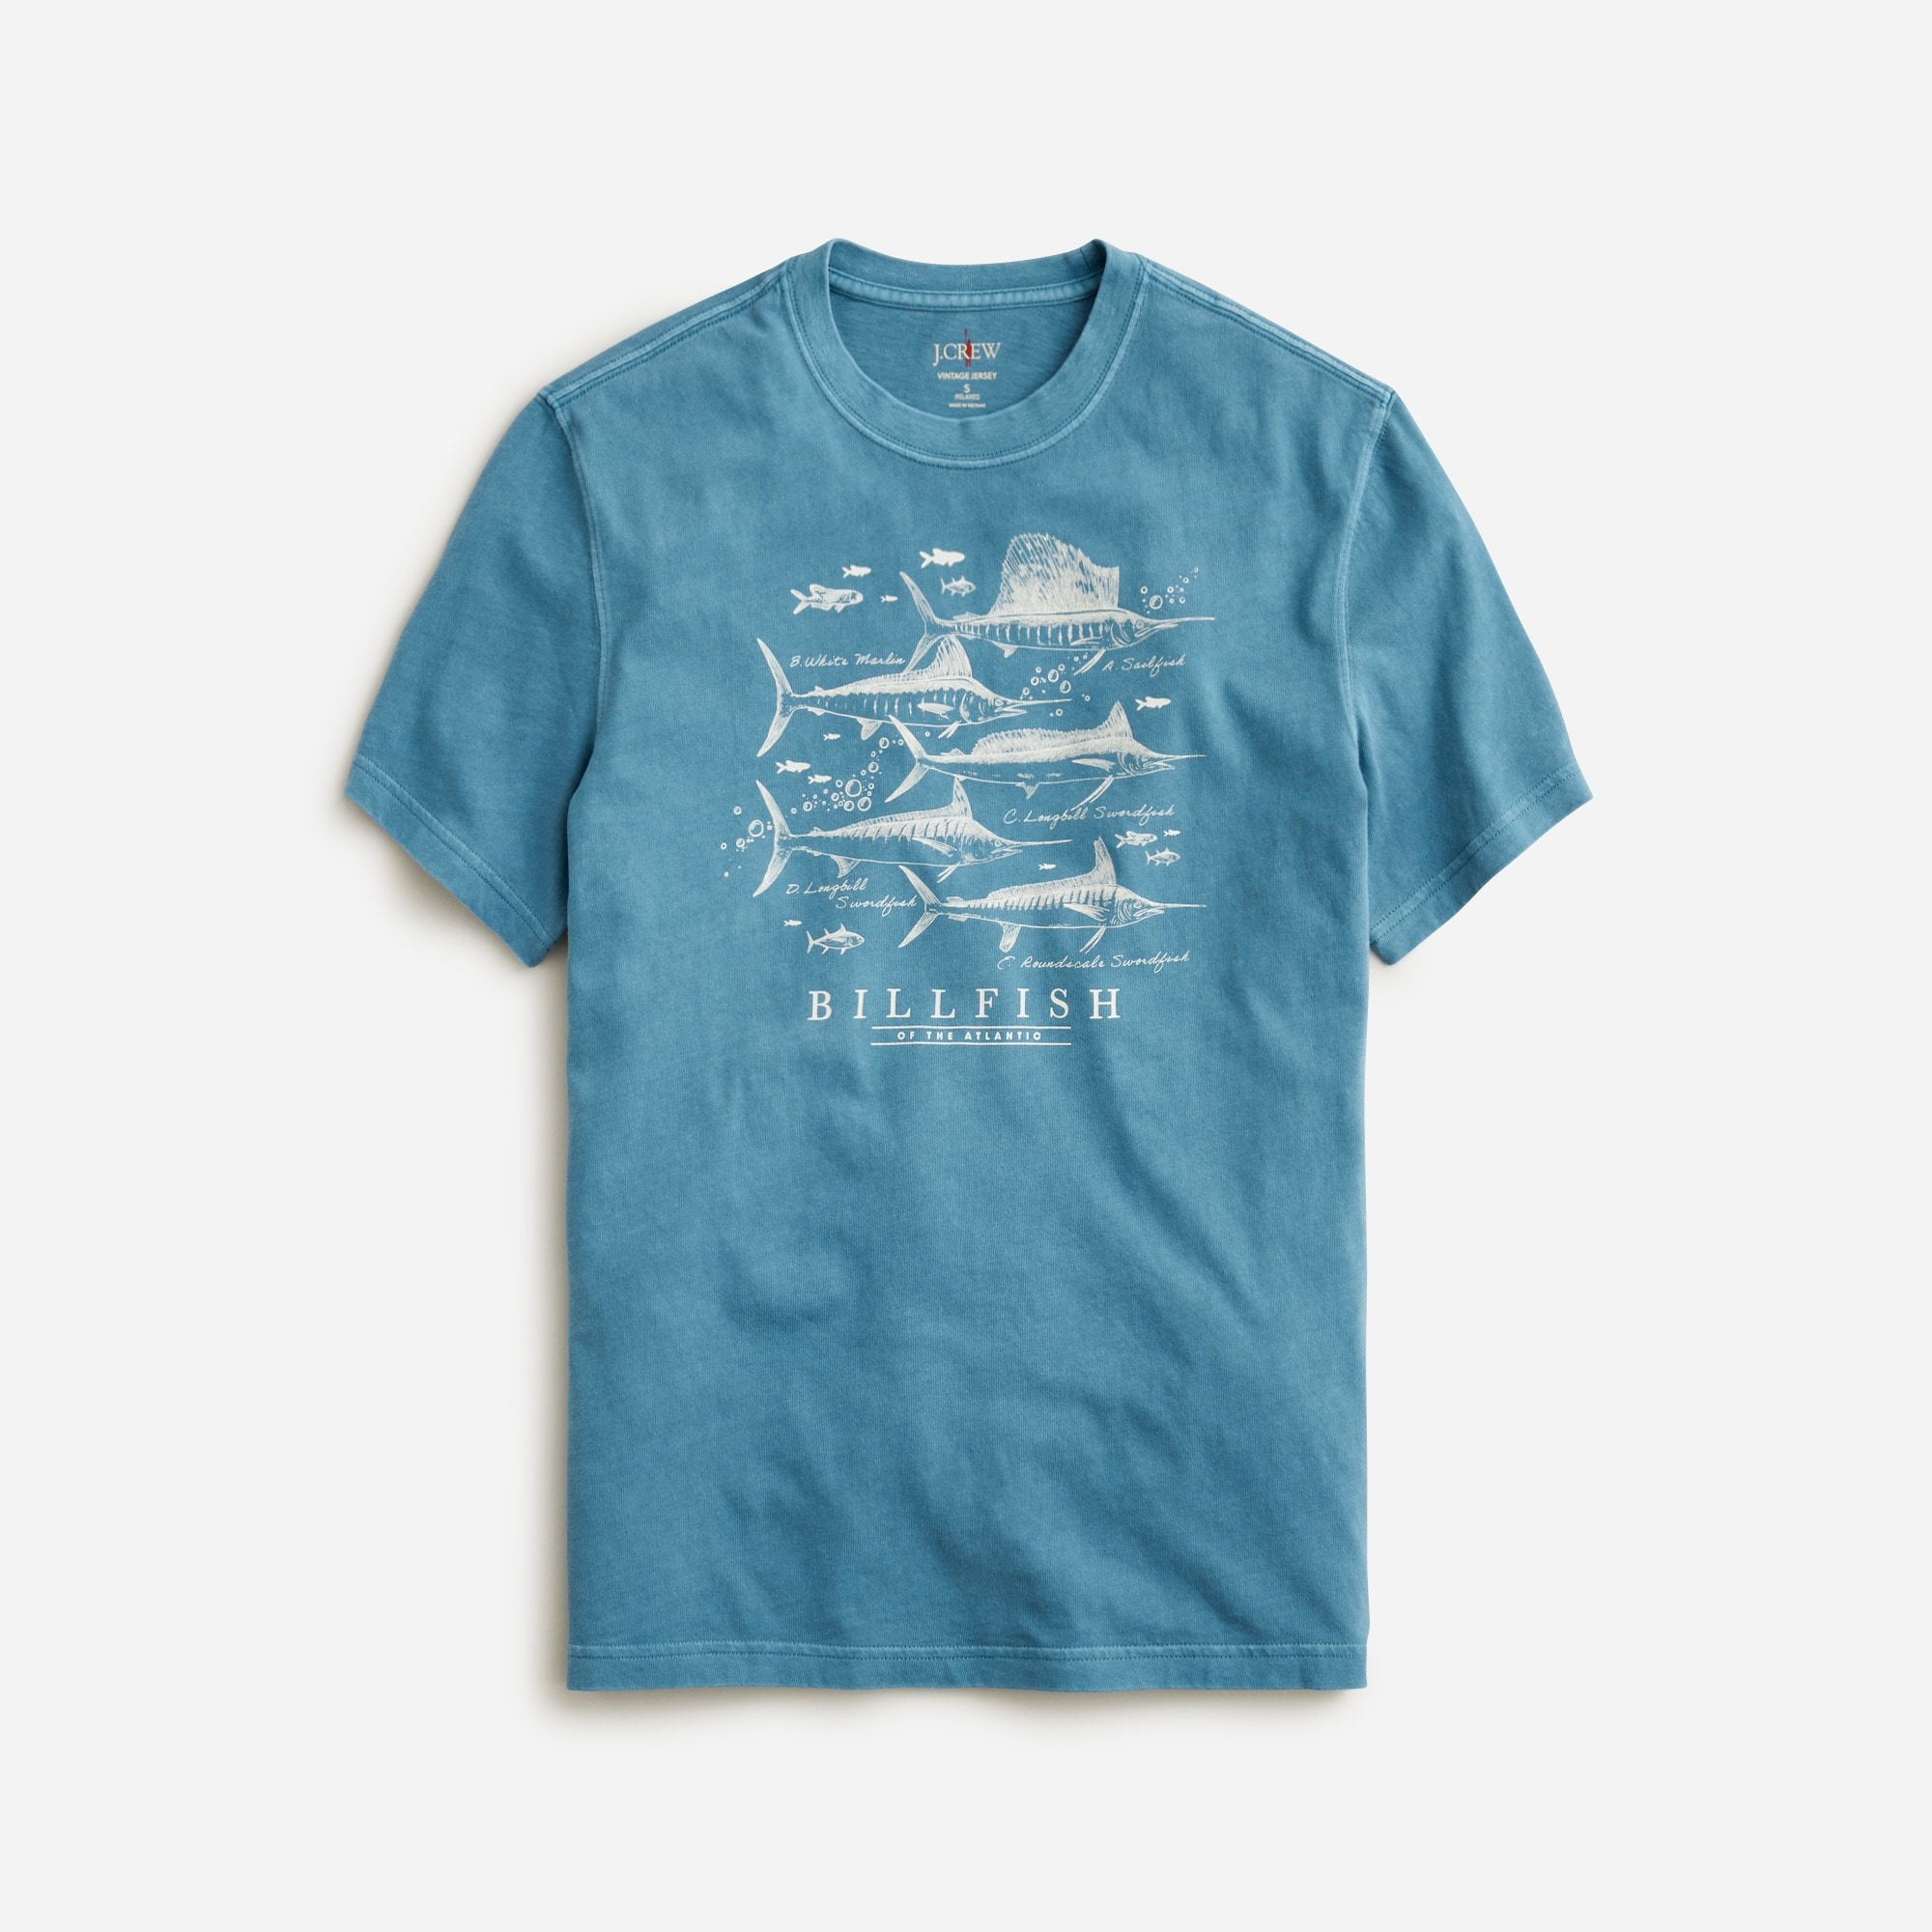  Vintage-wash cotton graphic T-shirt